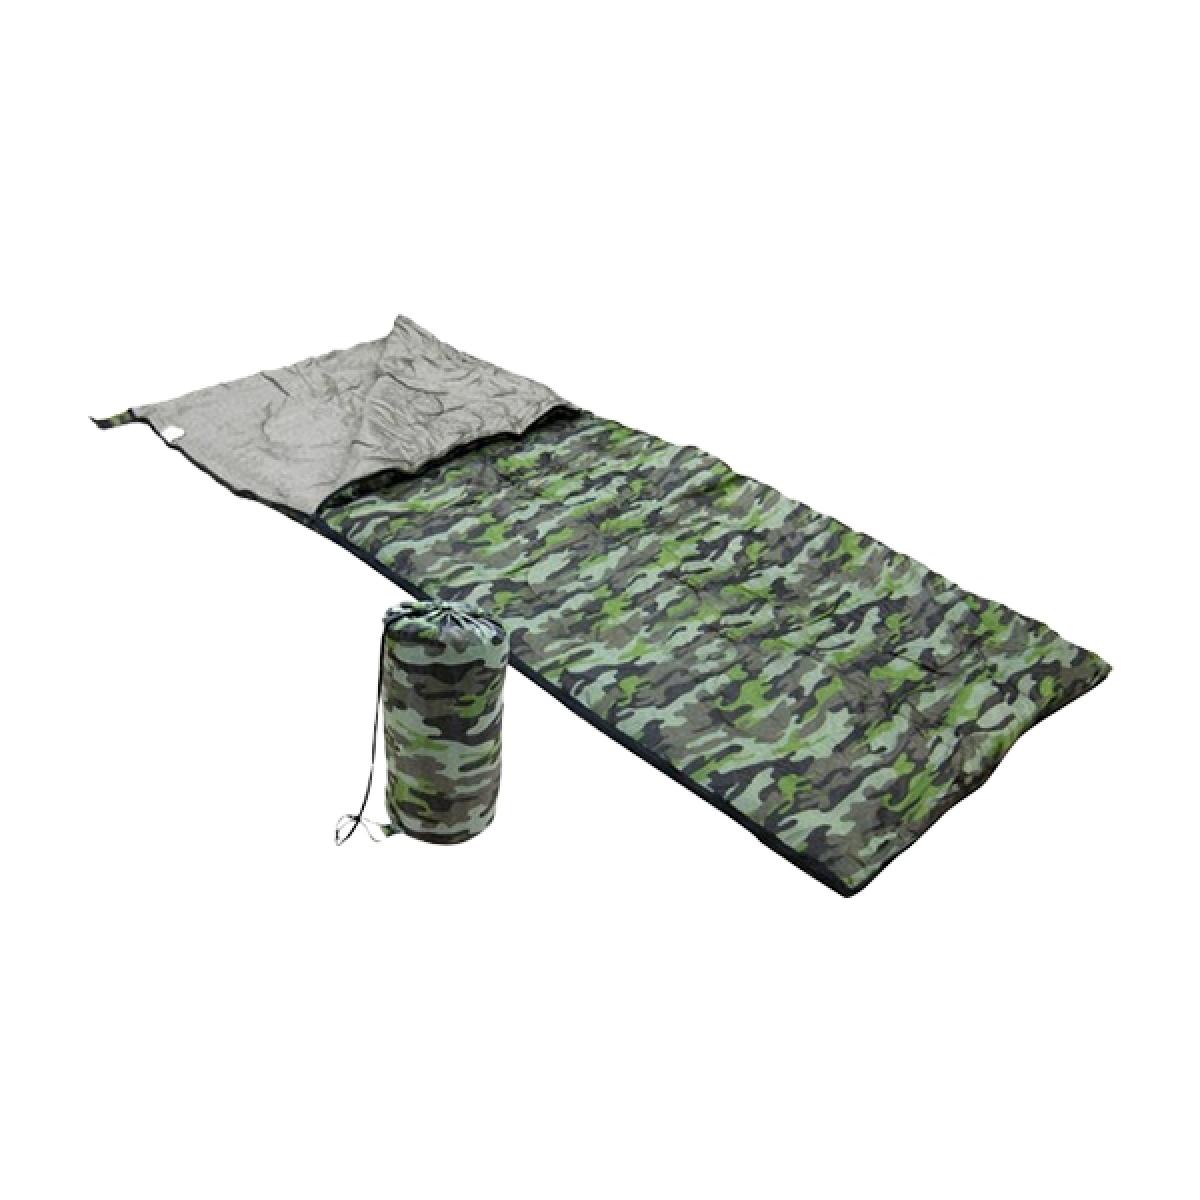 Totalcadeau - Sac de Couchage avec motif camouflage pour une personne 190 x 75 cm - Objets déco